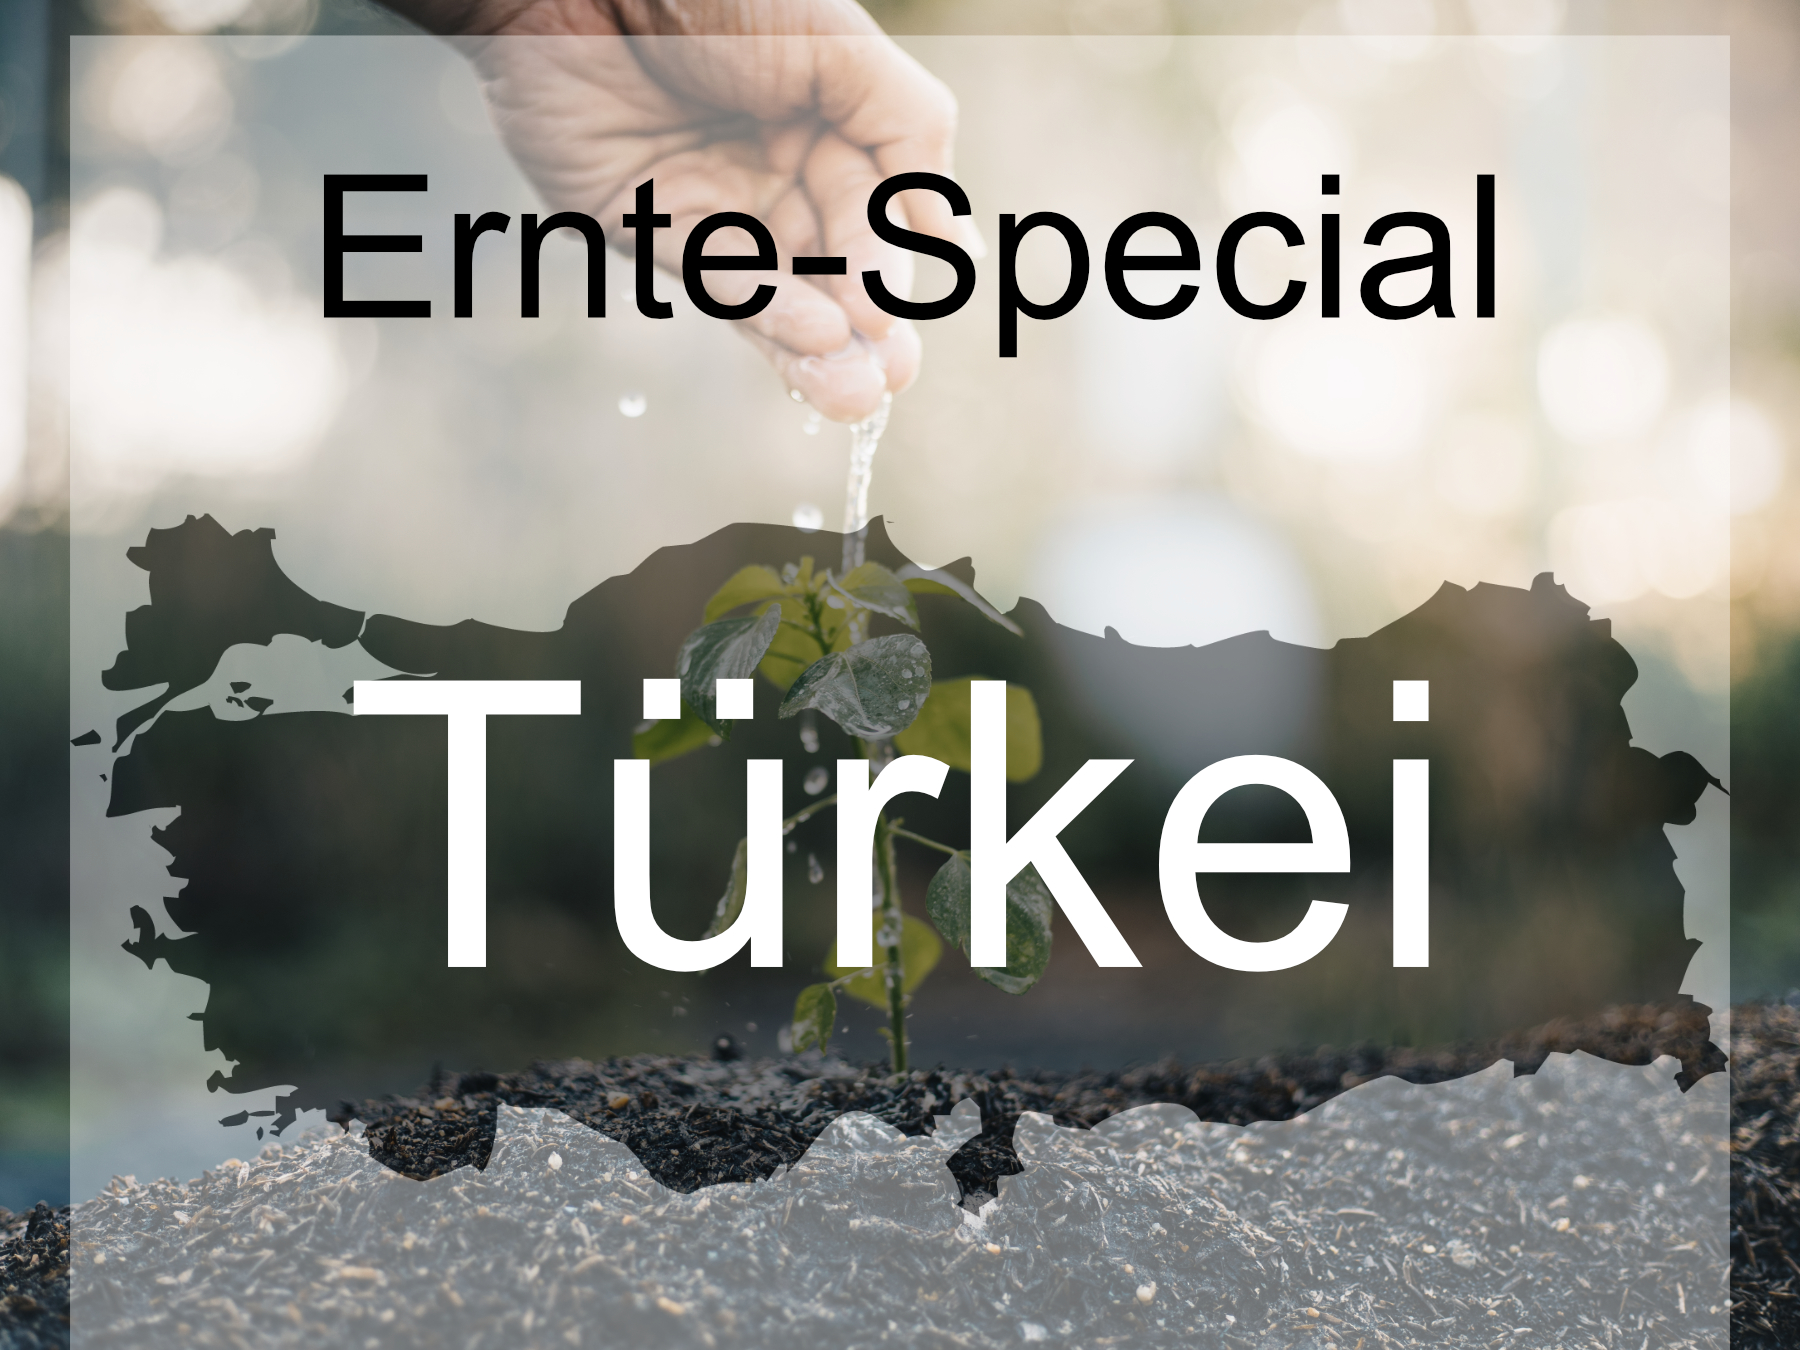 Blog-Bild-Ernte-Special-Turkei